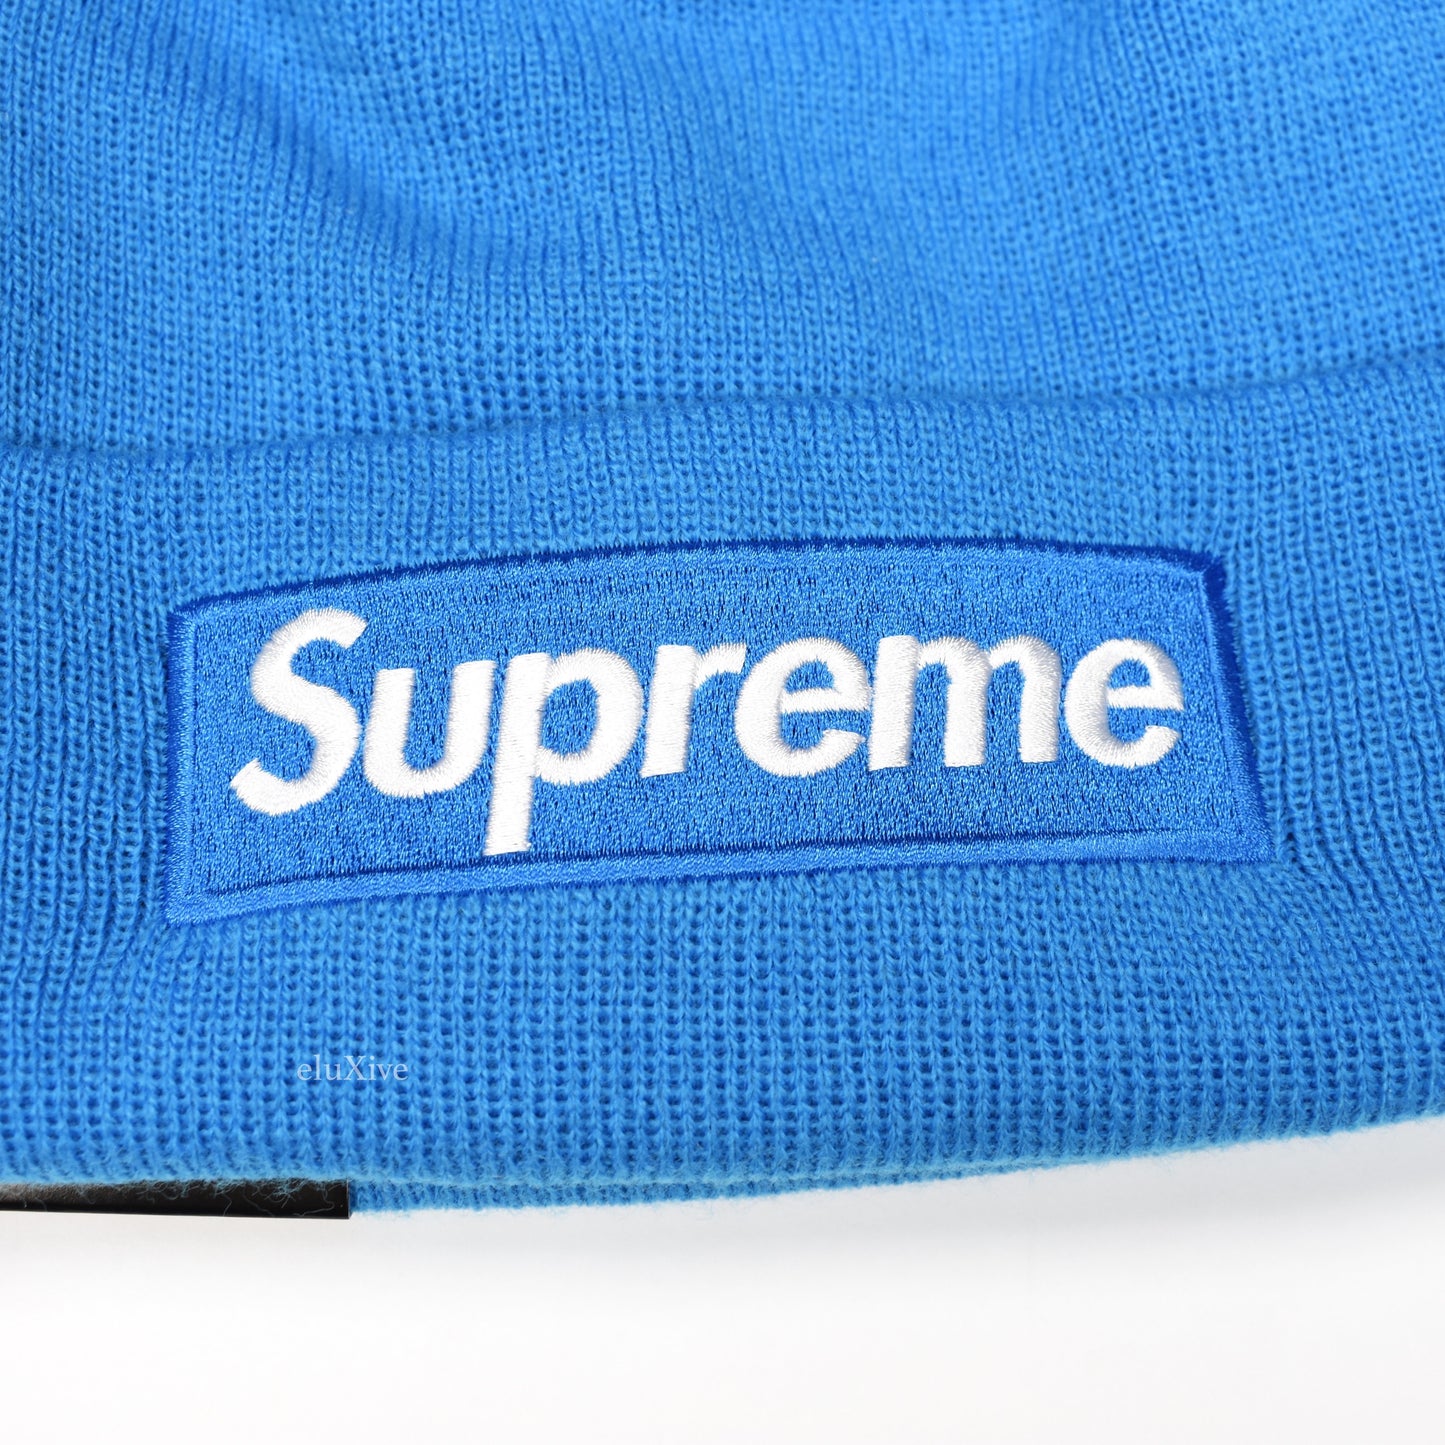 Supreme x New Era - Bright Blue Box Logo Beanie